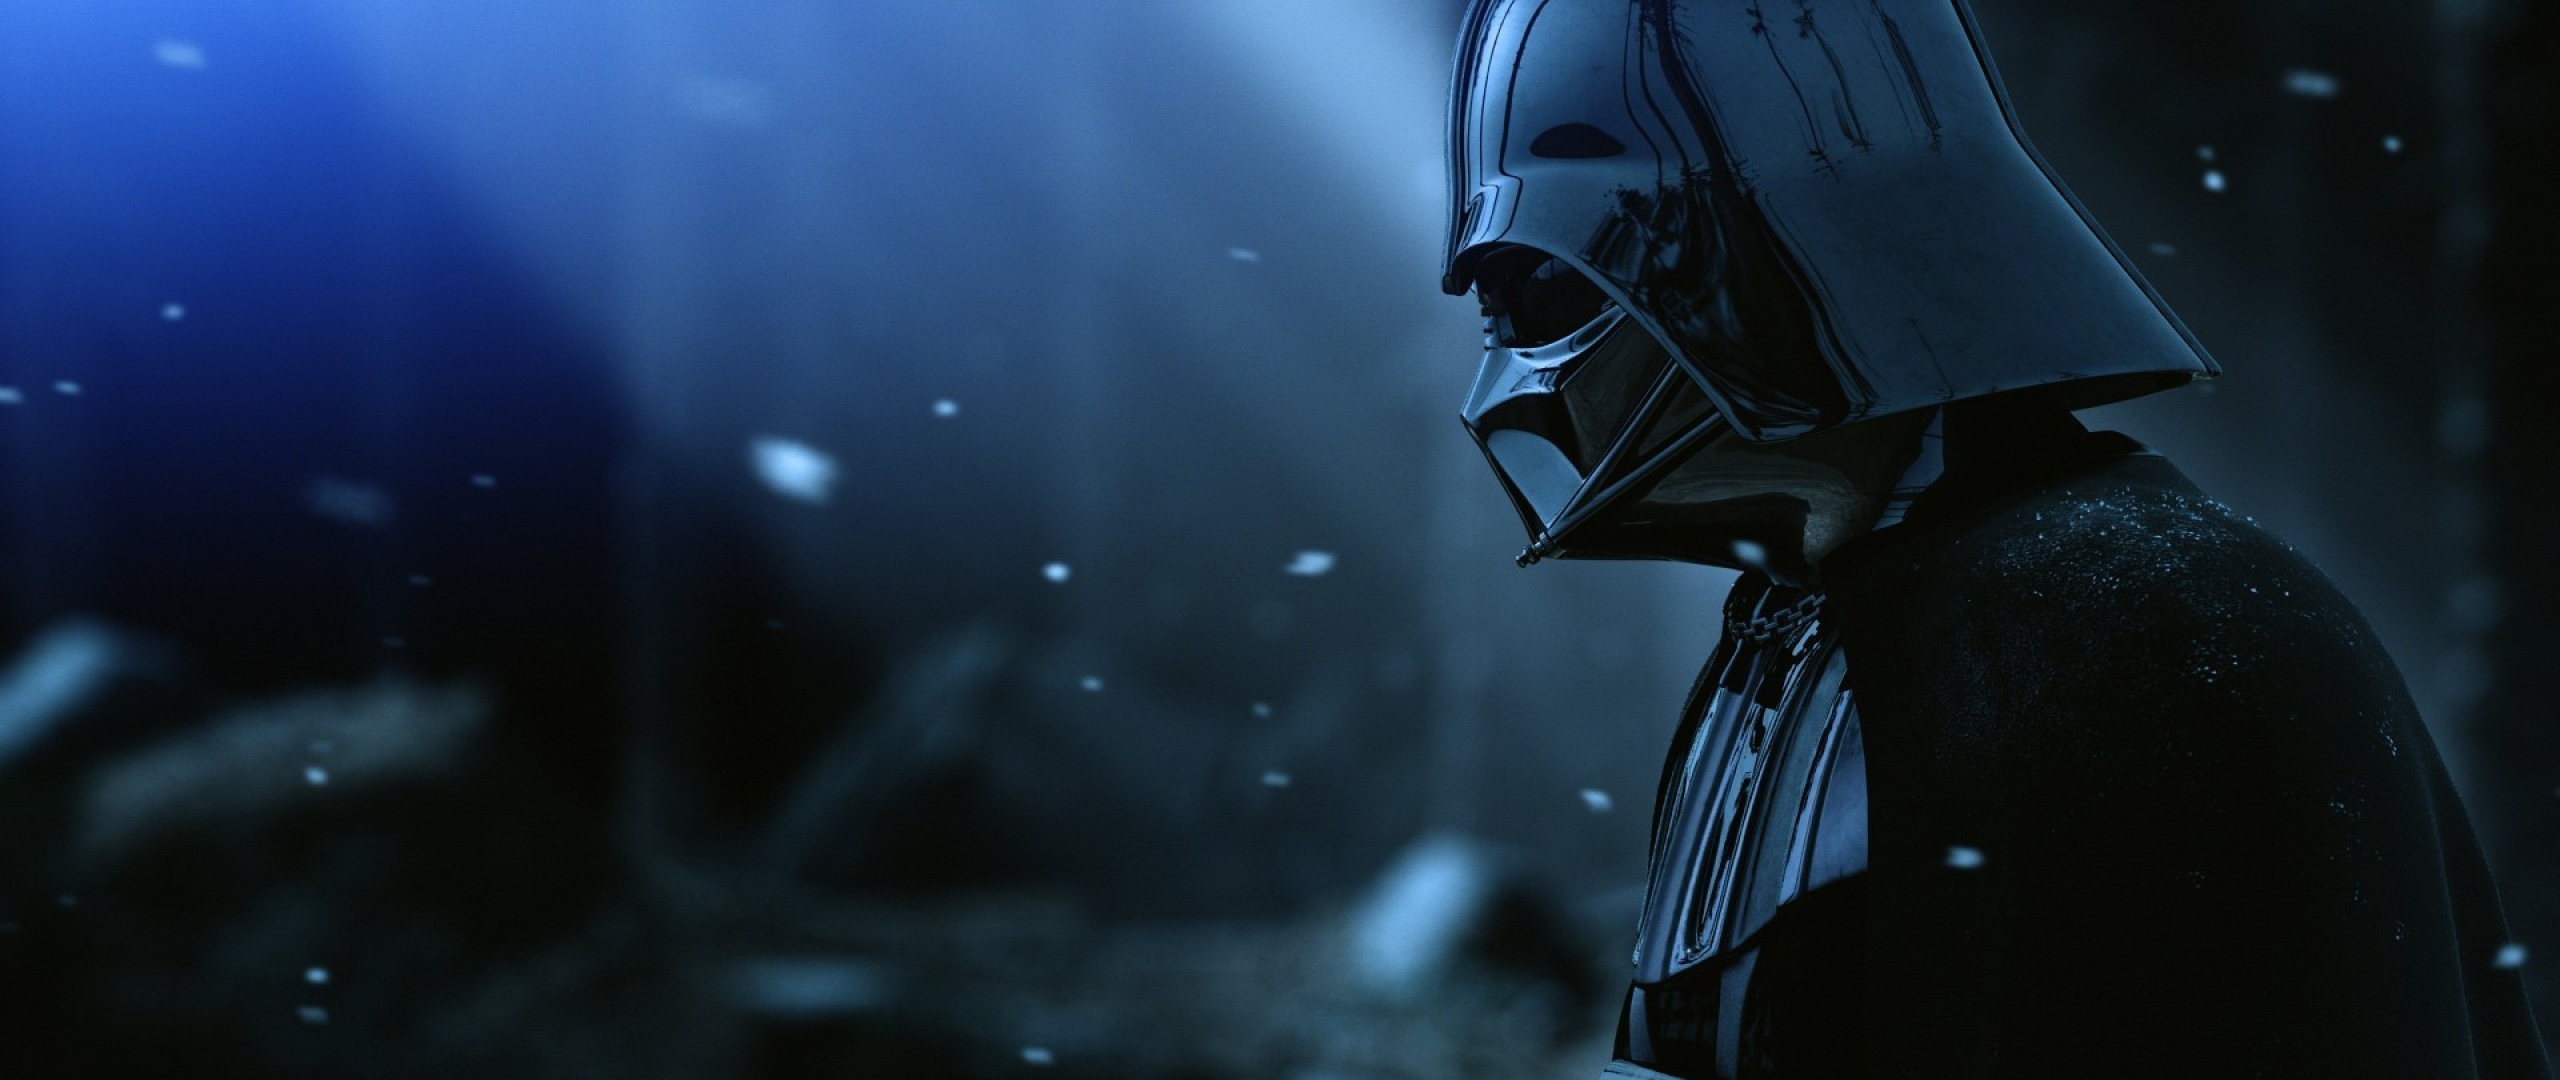 Wallpaper Darth Vader Armor Star Wars Film Hat Snow